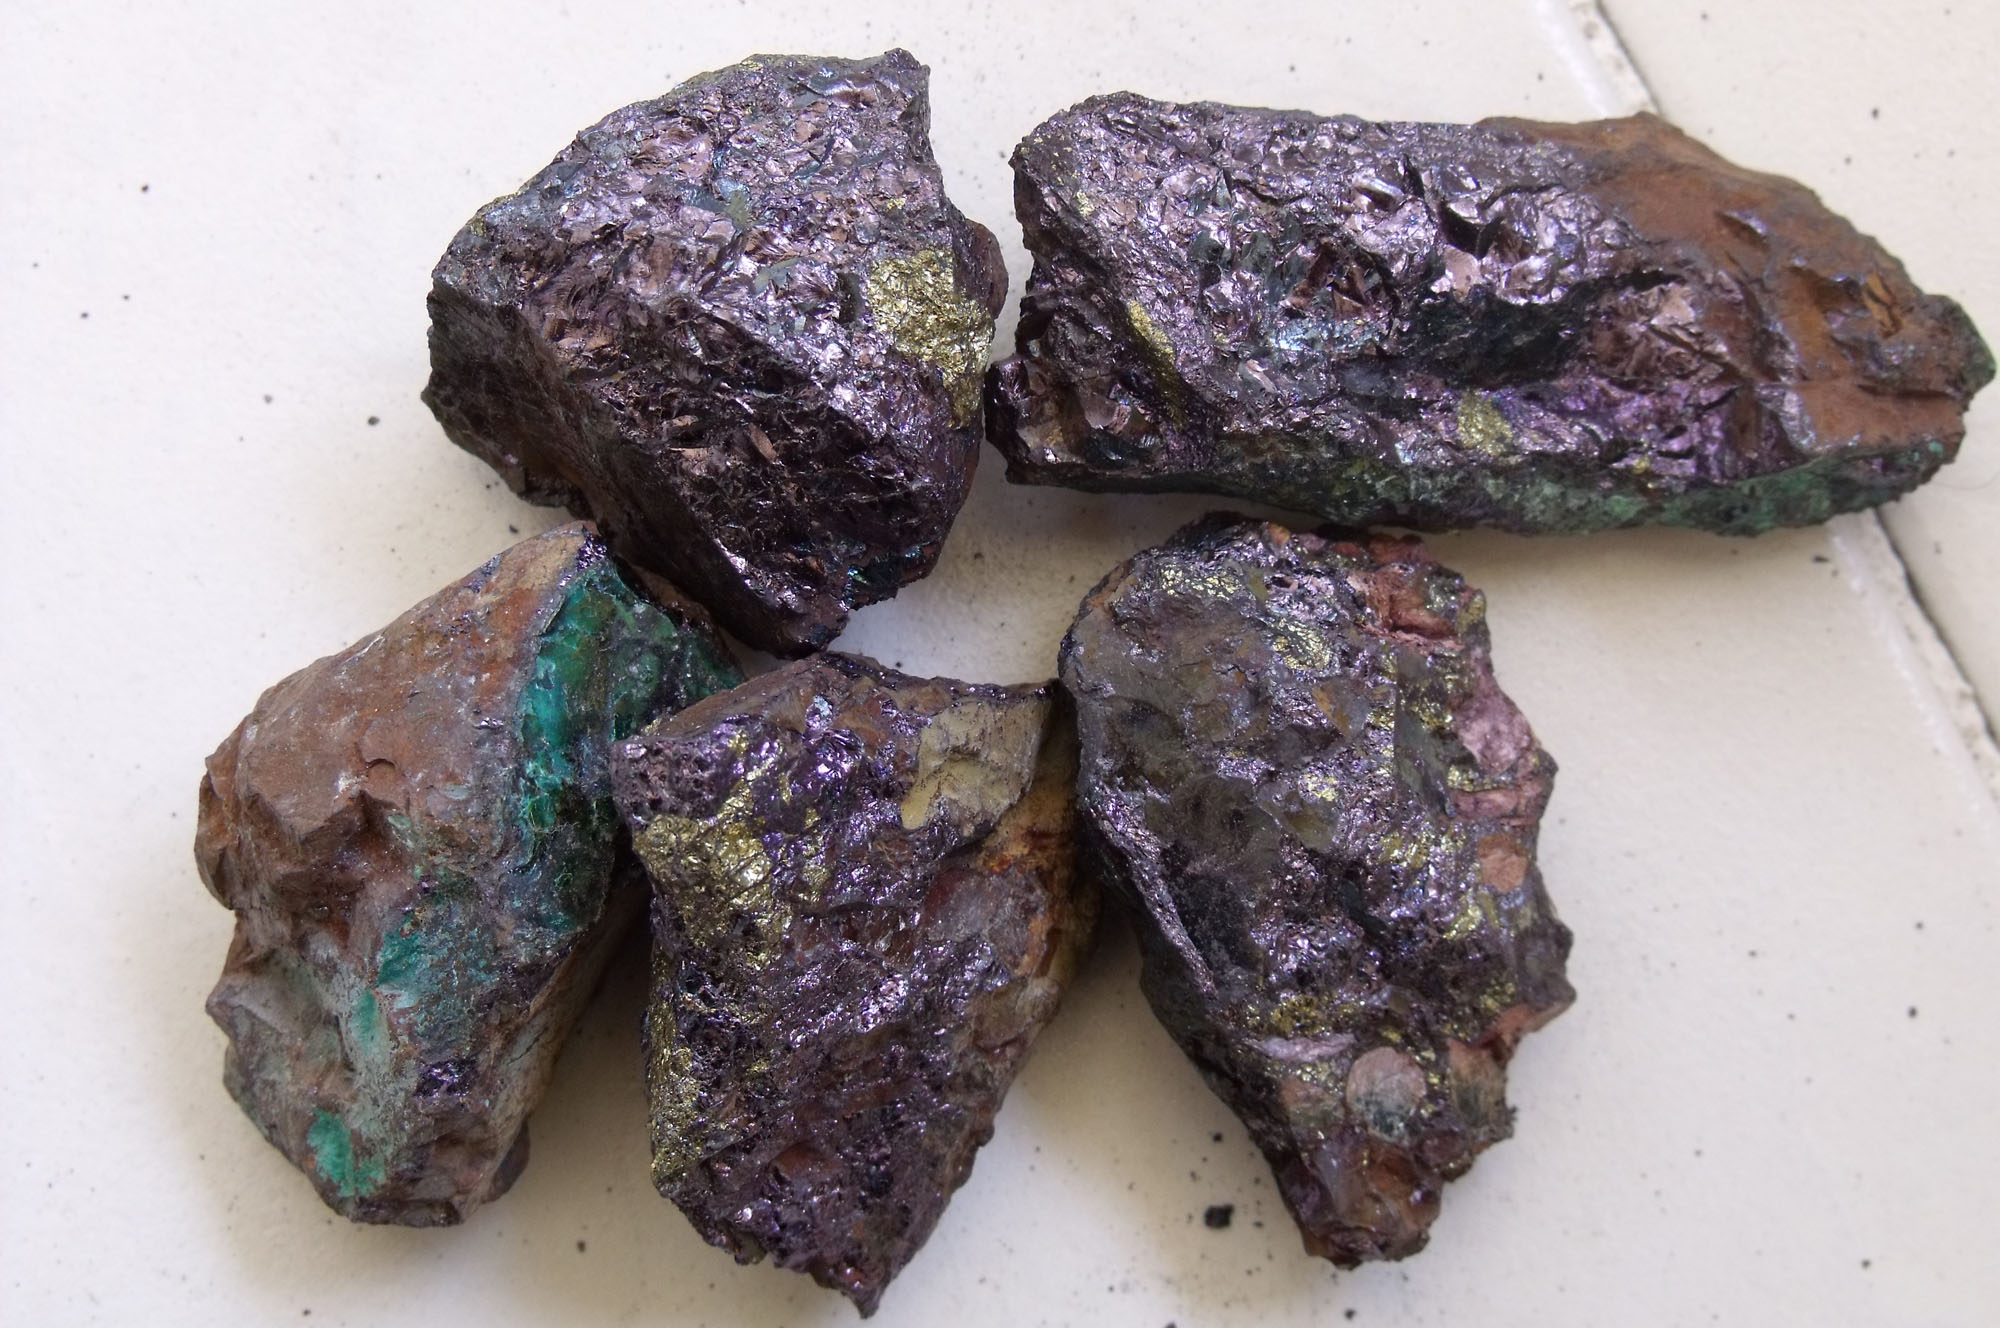 Свинец 2 уран. Марганцевая руда минерал. Марганец полезное ископаемое. Железо-марганцевые руды. Минералы марганца.